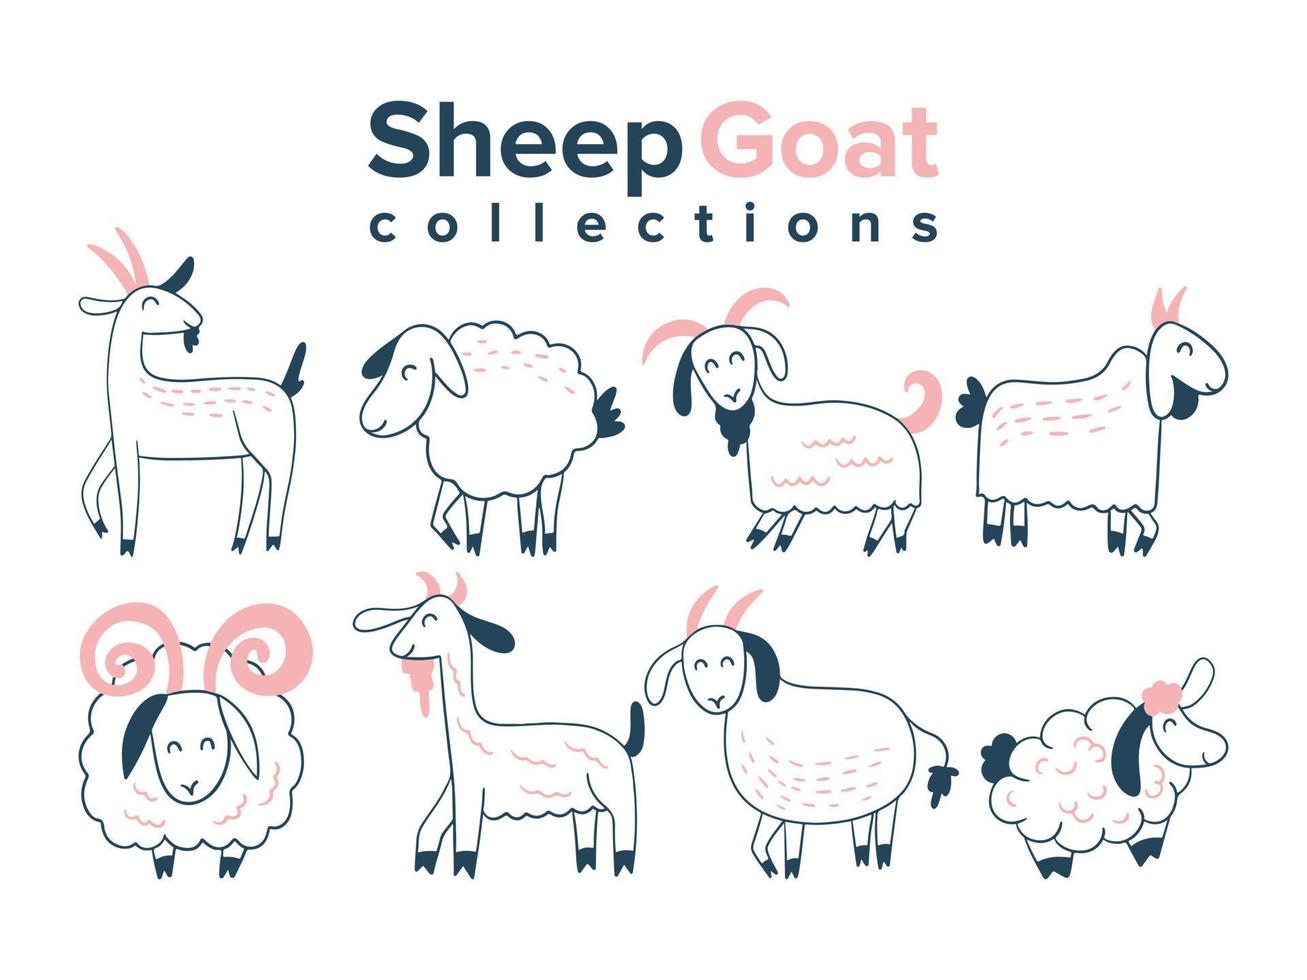 colletions de chèvre de mouton pour eid al adha sacrifice illustration vectorielle de vacances vecteur